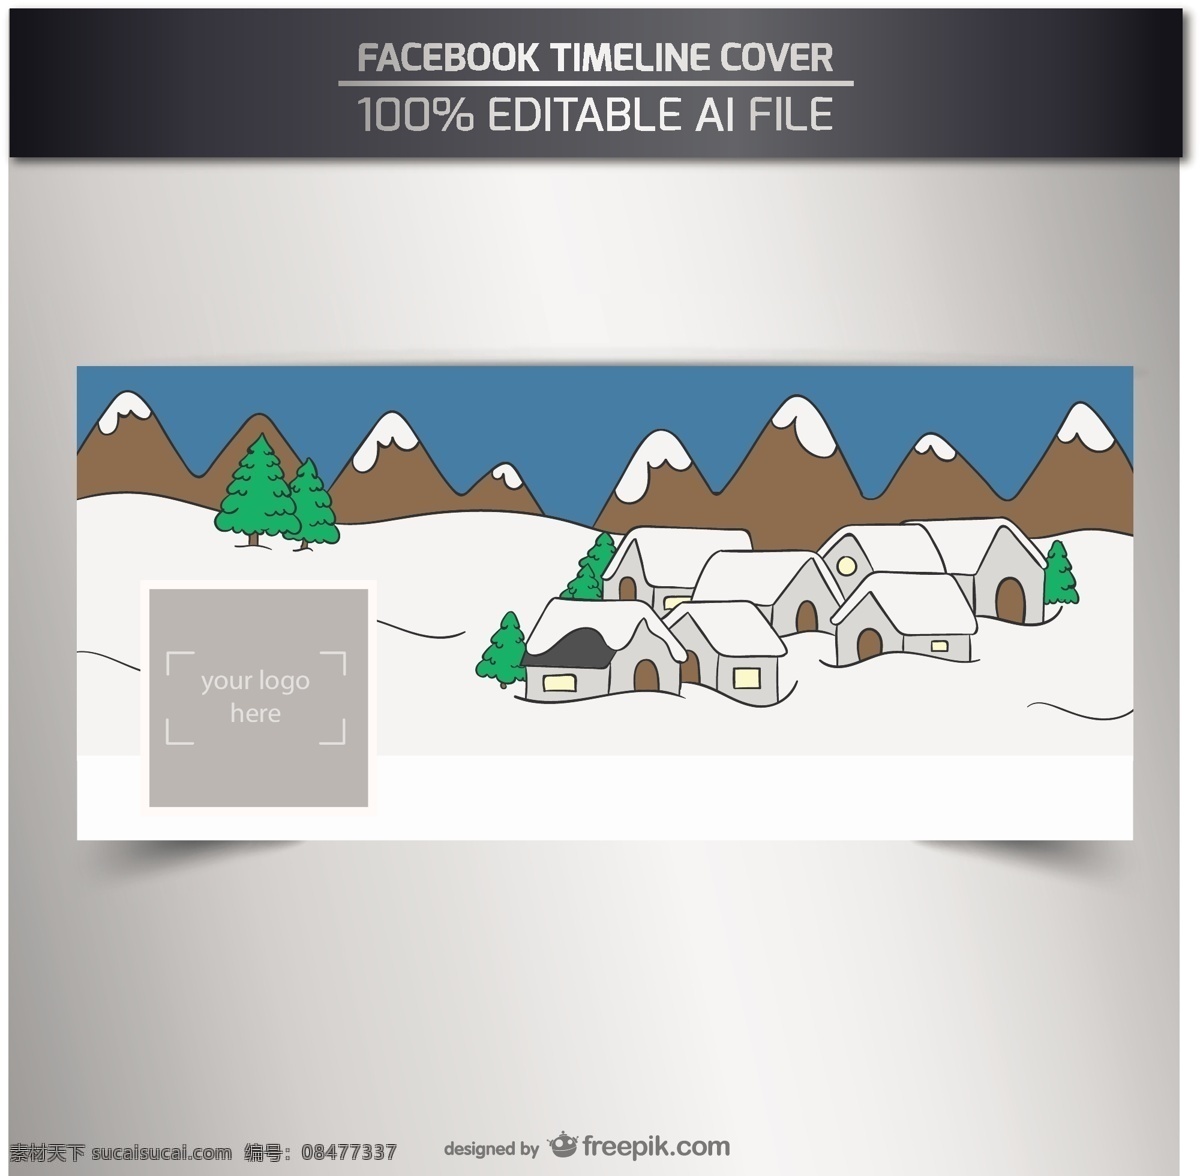 脸谱 网 覆盖 雪 村庄 一方面 社交媒体 脸谱网 模板 社会 盖 手绘 网络 绘画 媒体 社交网络 村 手工绘图 绘制的 粗略的 白色